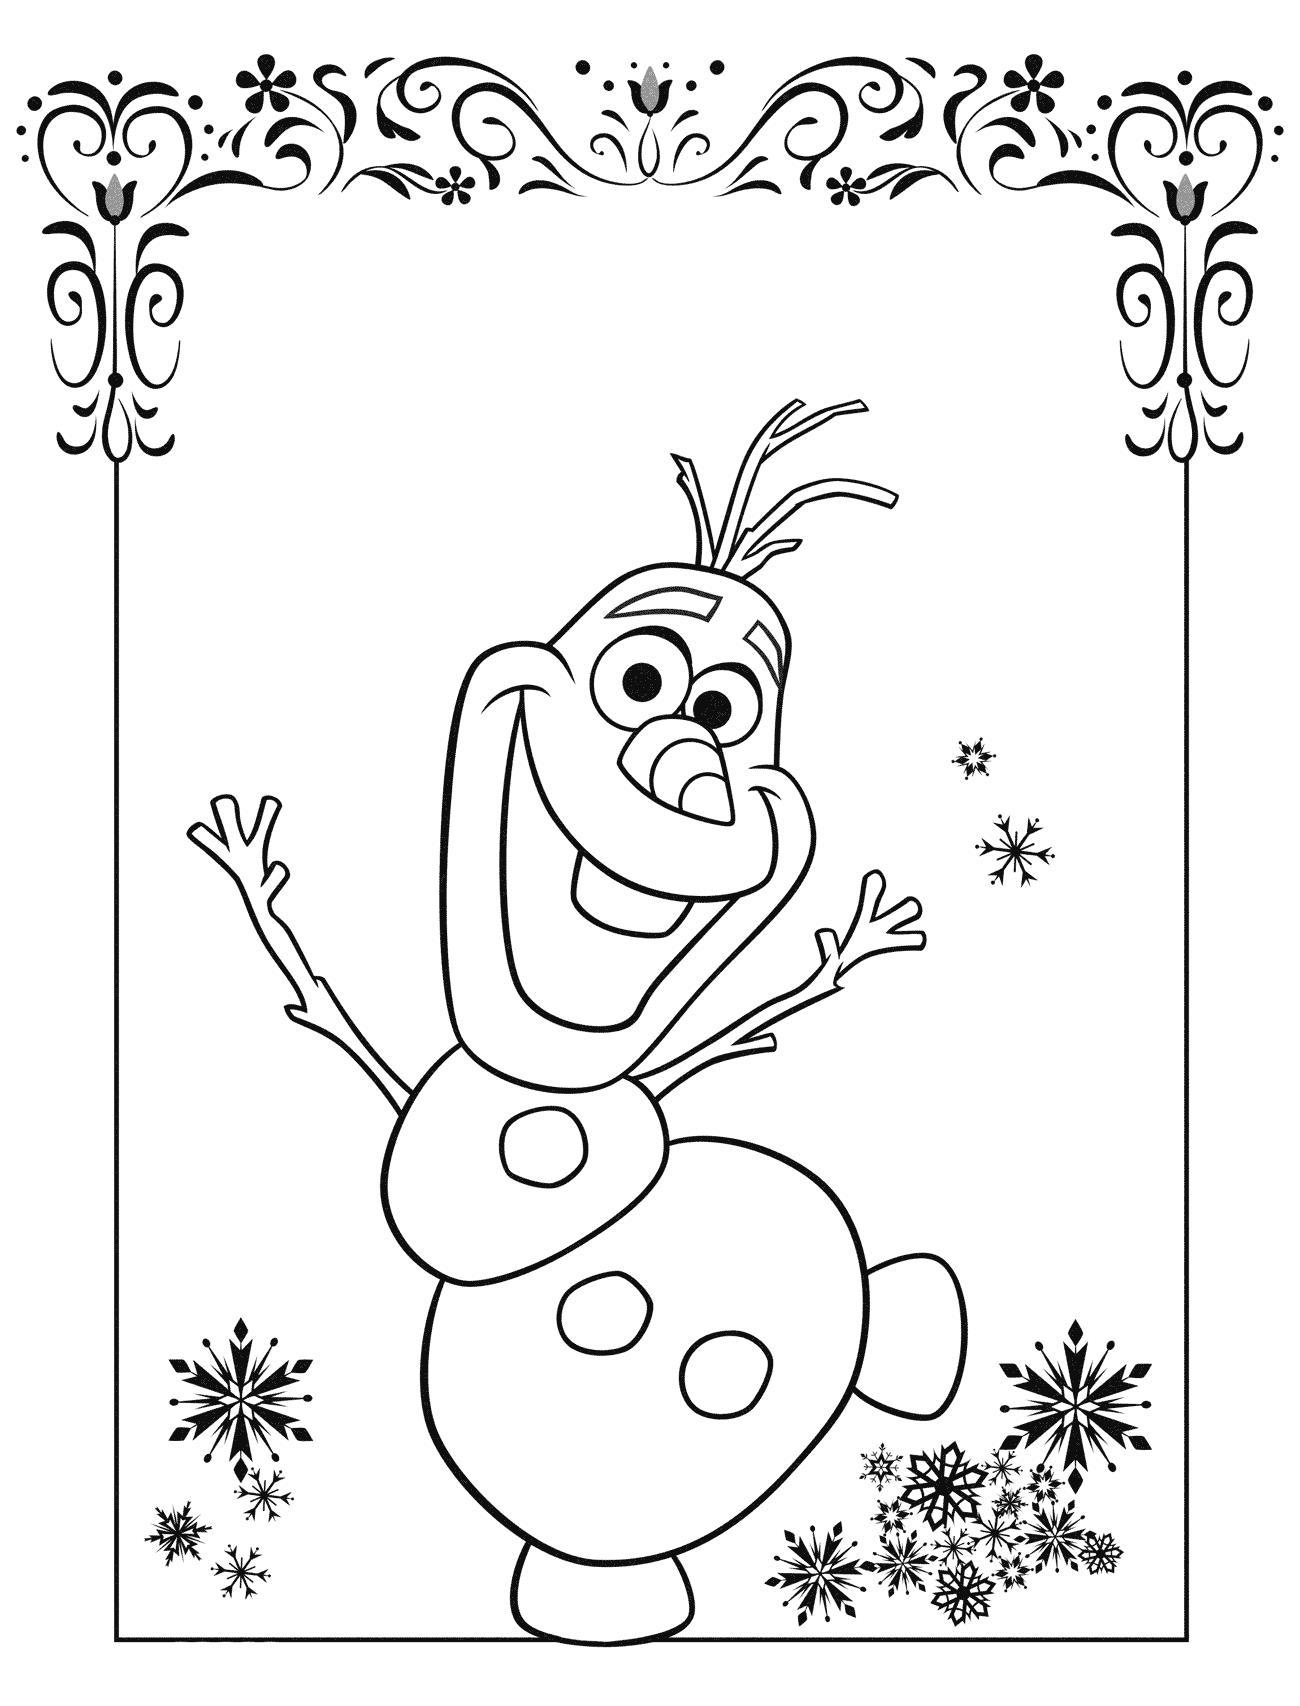 Снеговик олаф для открытки Рисунок раскраска на зимнюю тему